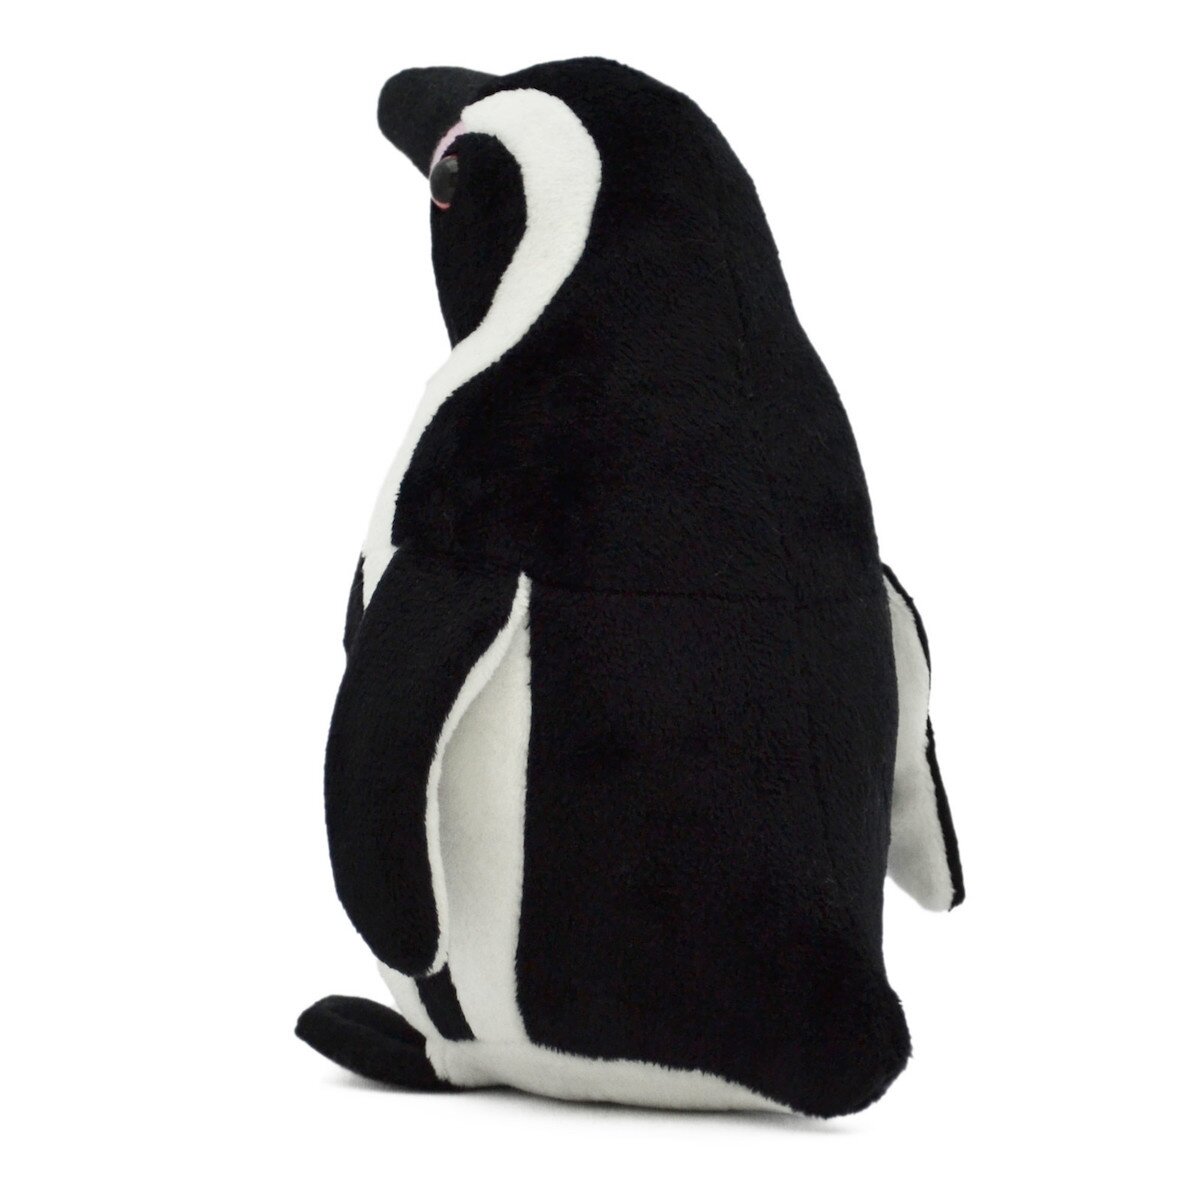 Plush Penguin Collection: Humboldt Penguin